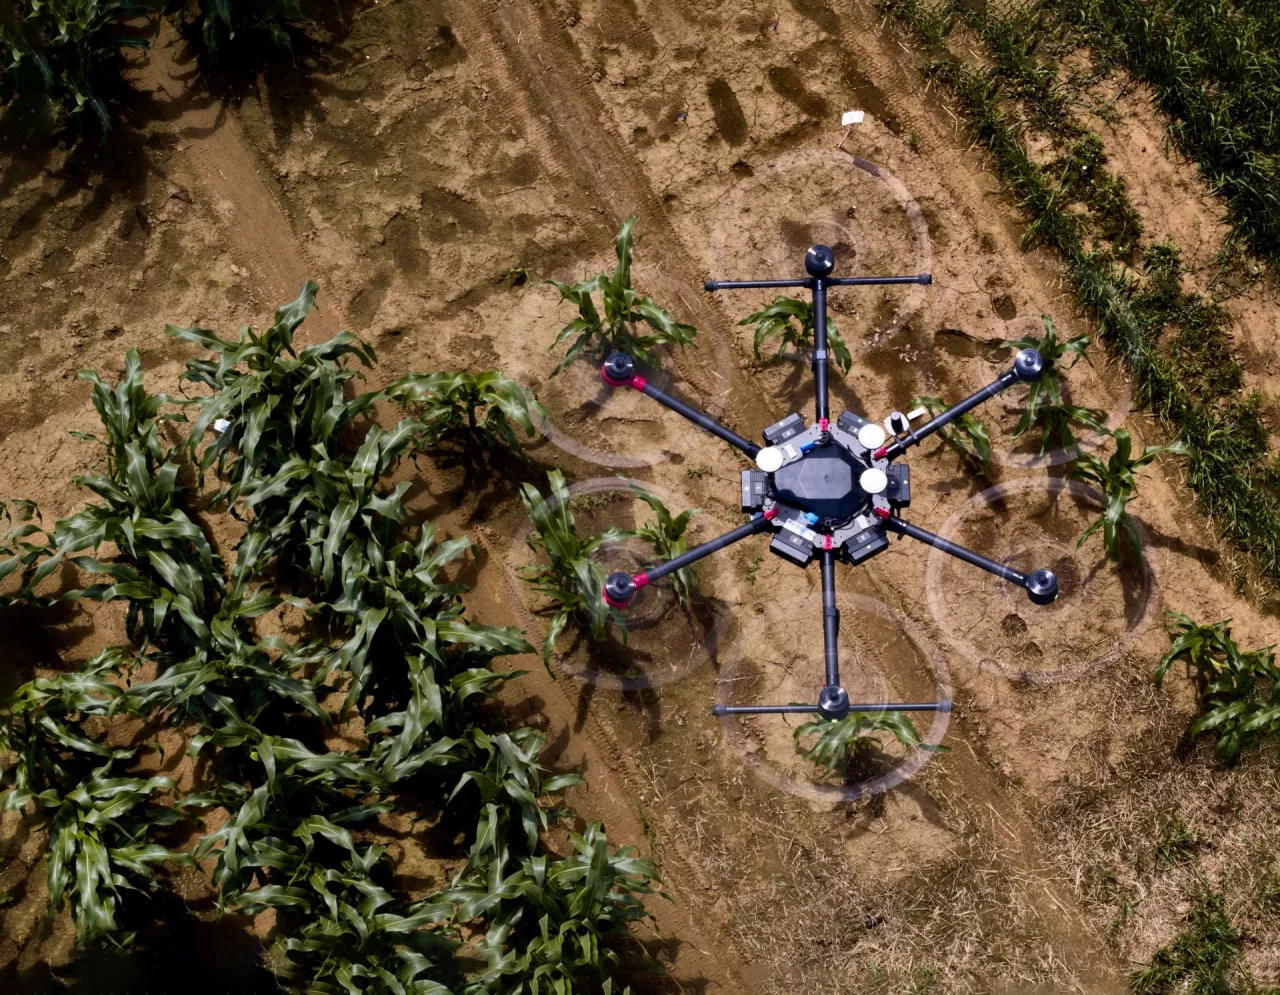 Oprogramowanie wspierane przez AI może wizualizować przyszły wzrost roślin na podstawie zdjęć z drona lub innych obrazów z wczesnej fazy wzrostu